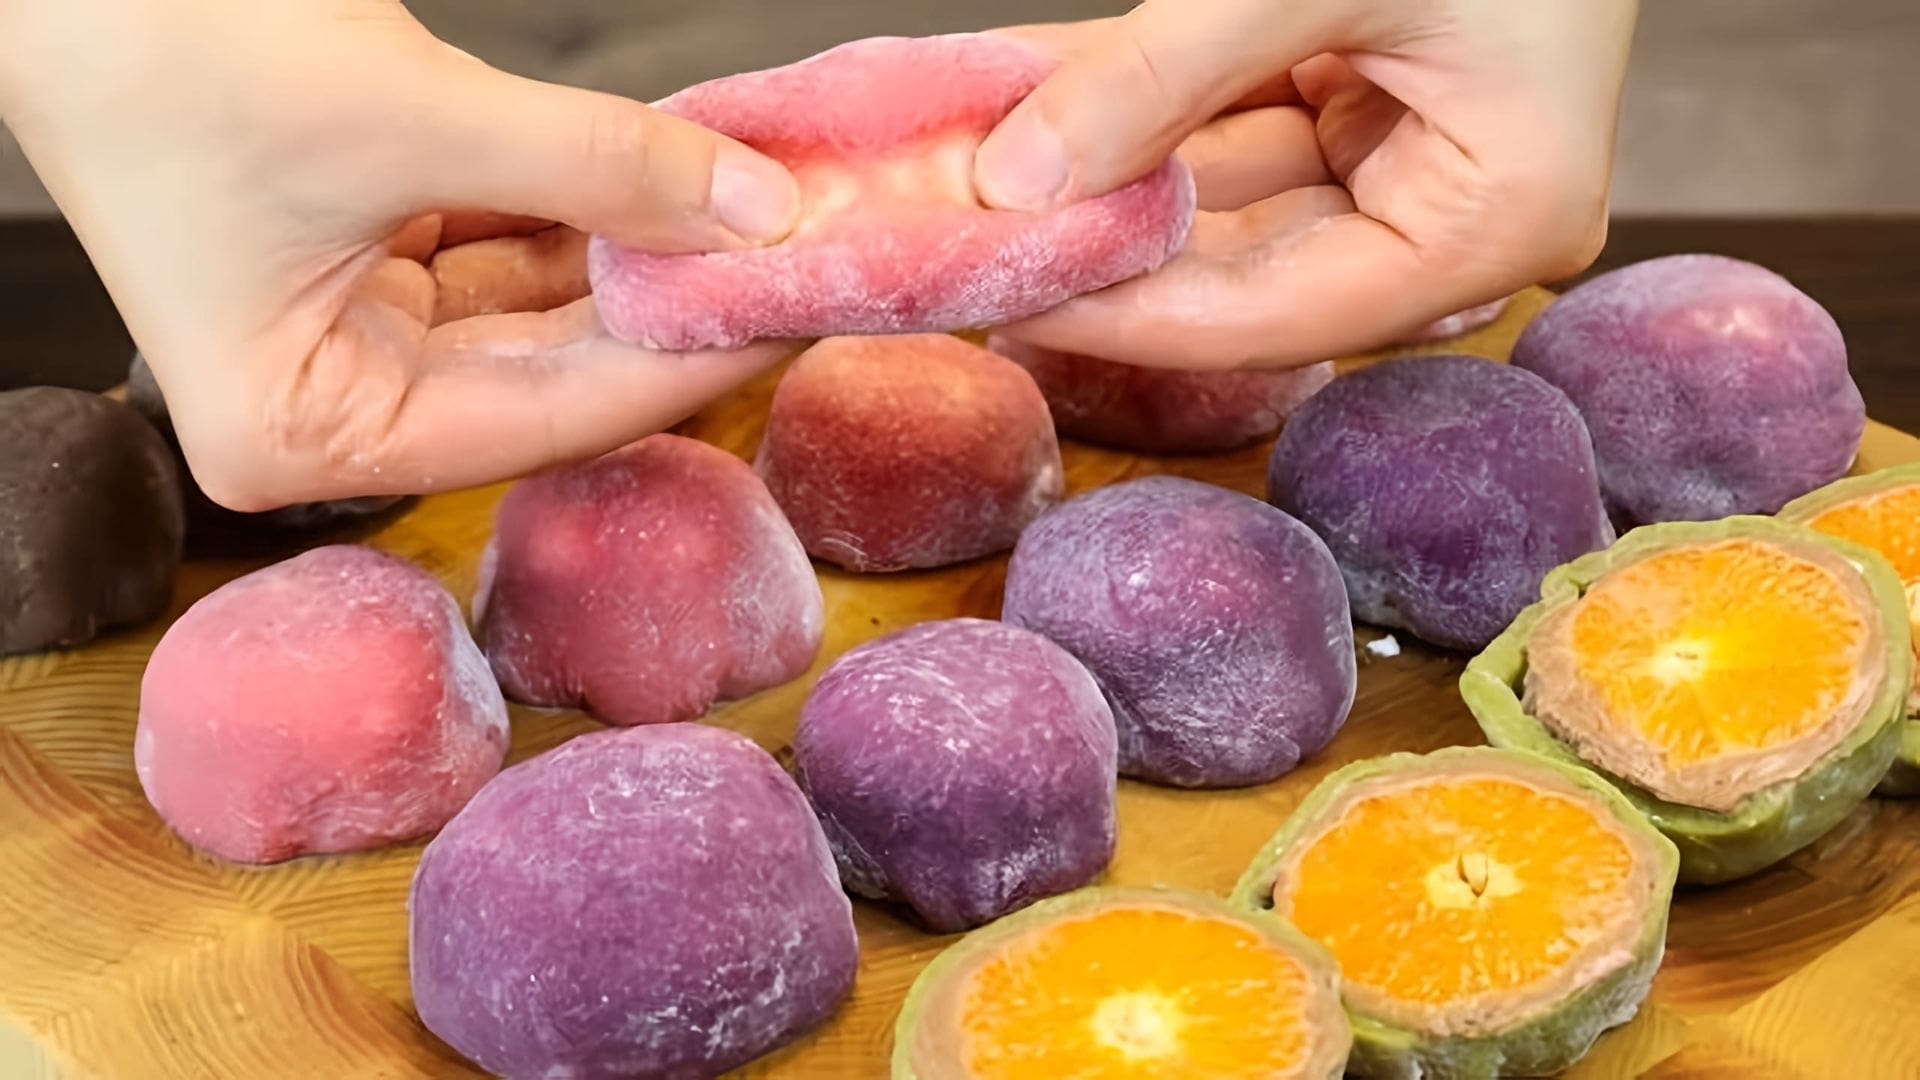 В этом видео демонстрируется рецепт приготовления японского десерта МОТИ (мочи), который готовится из рисовой муки